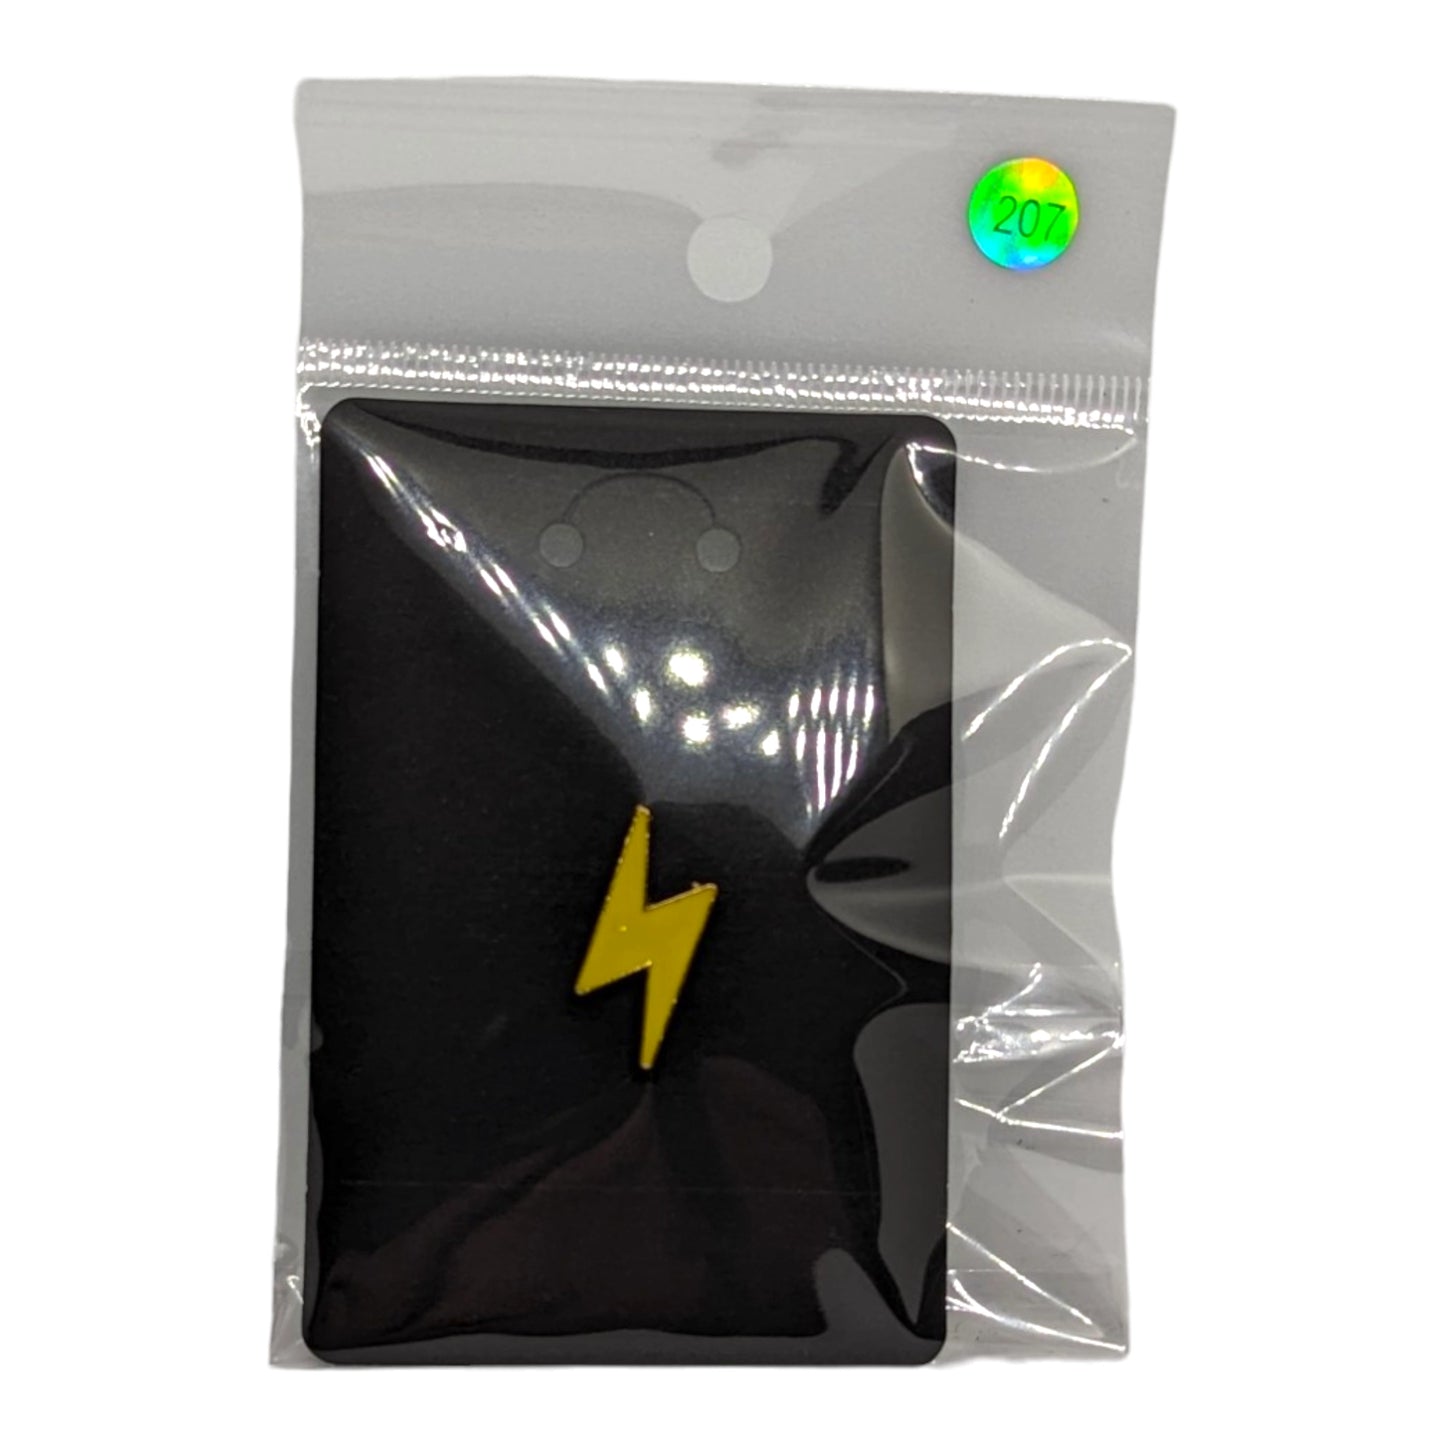 Lightning Bolt Enamel Pin #207